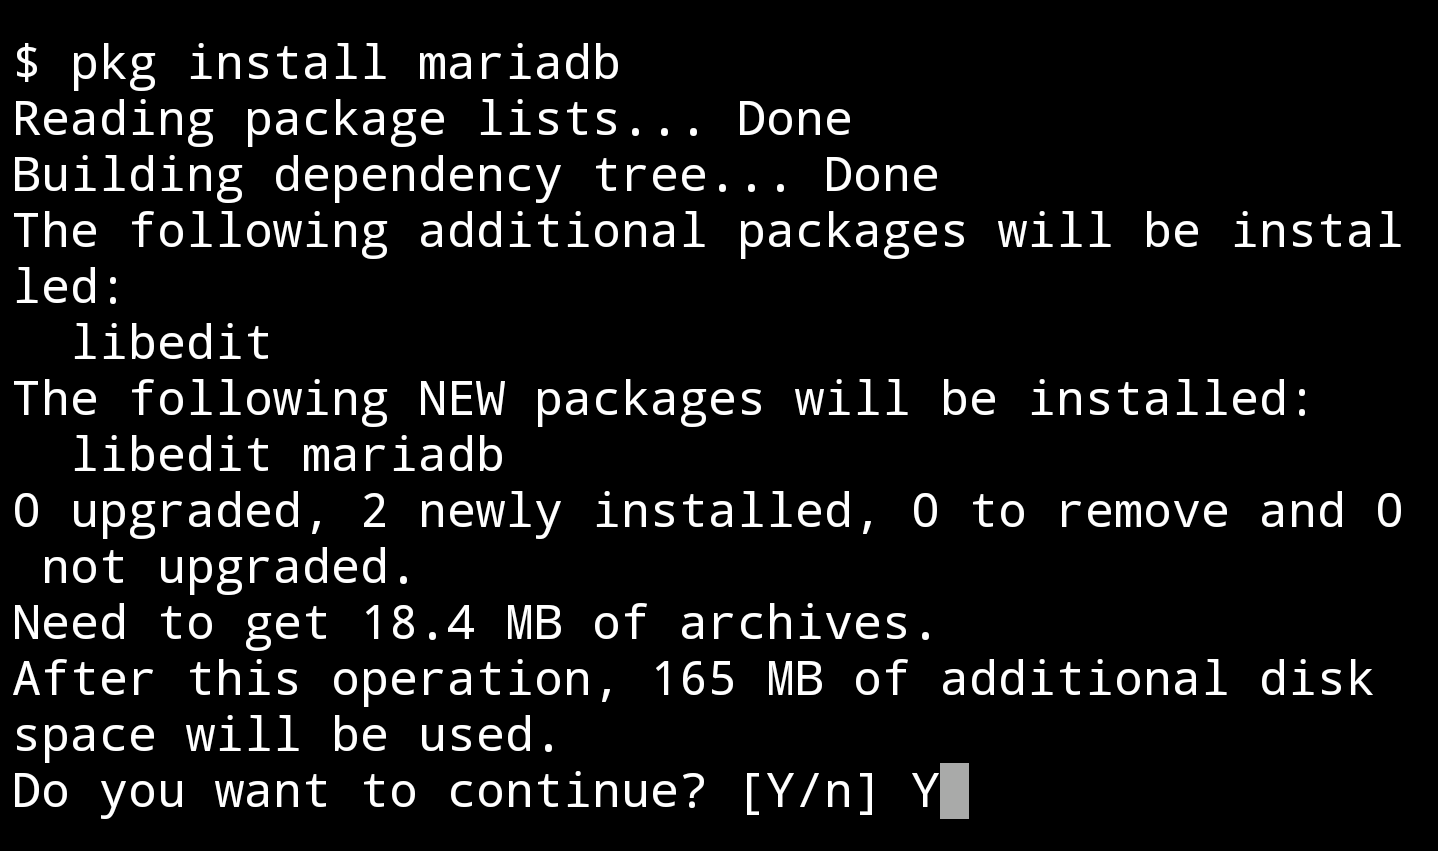 step 1 - install MariaDB